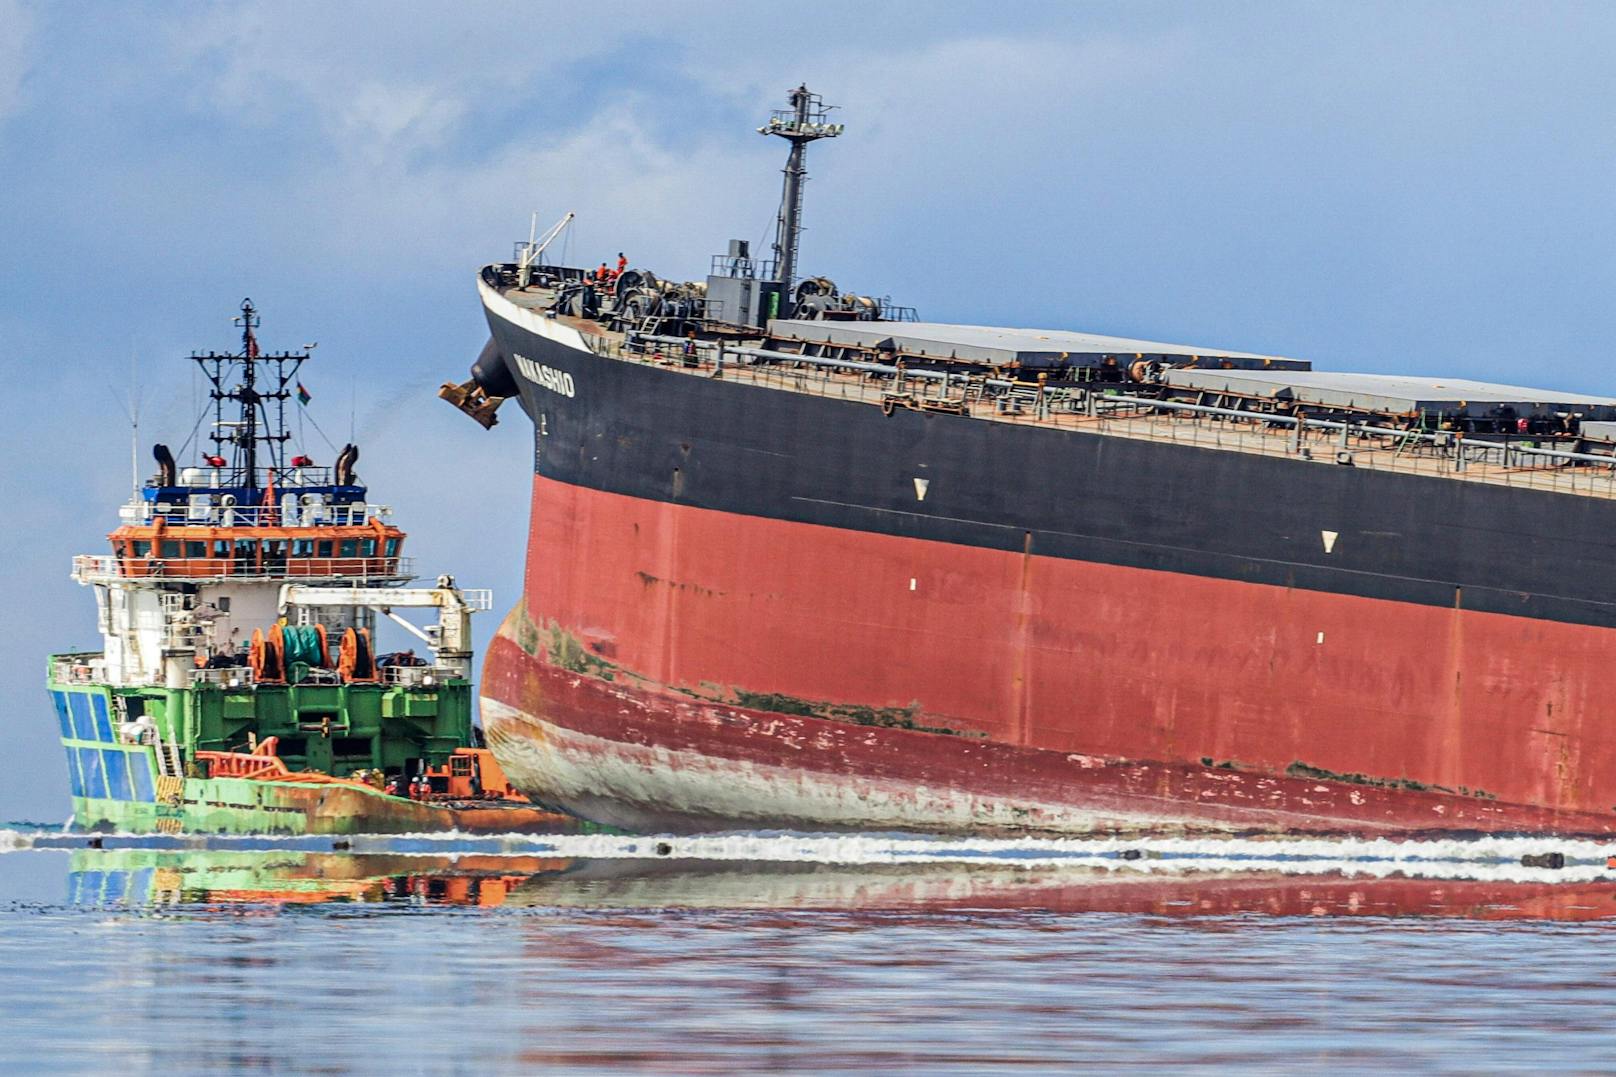 Bilder der Ölkatastrophe vor Mauritius (8. August 2020)